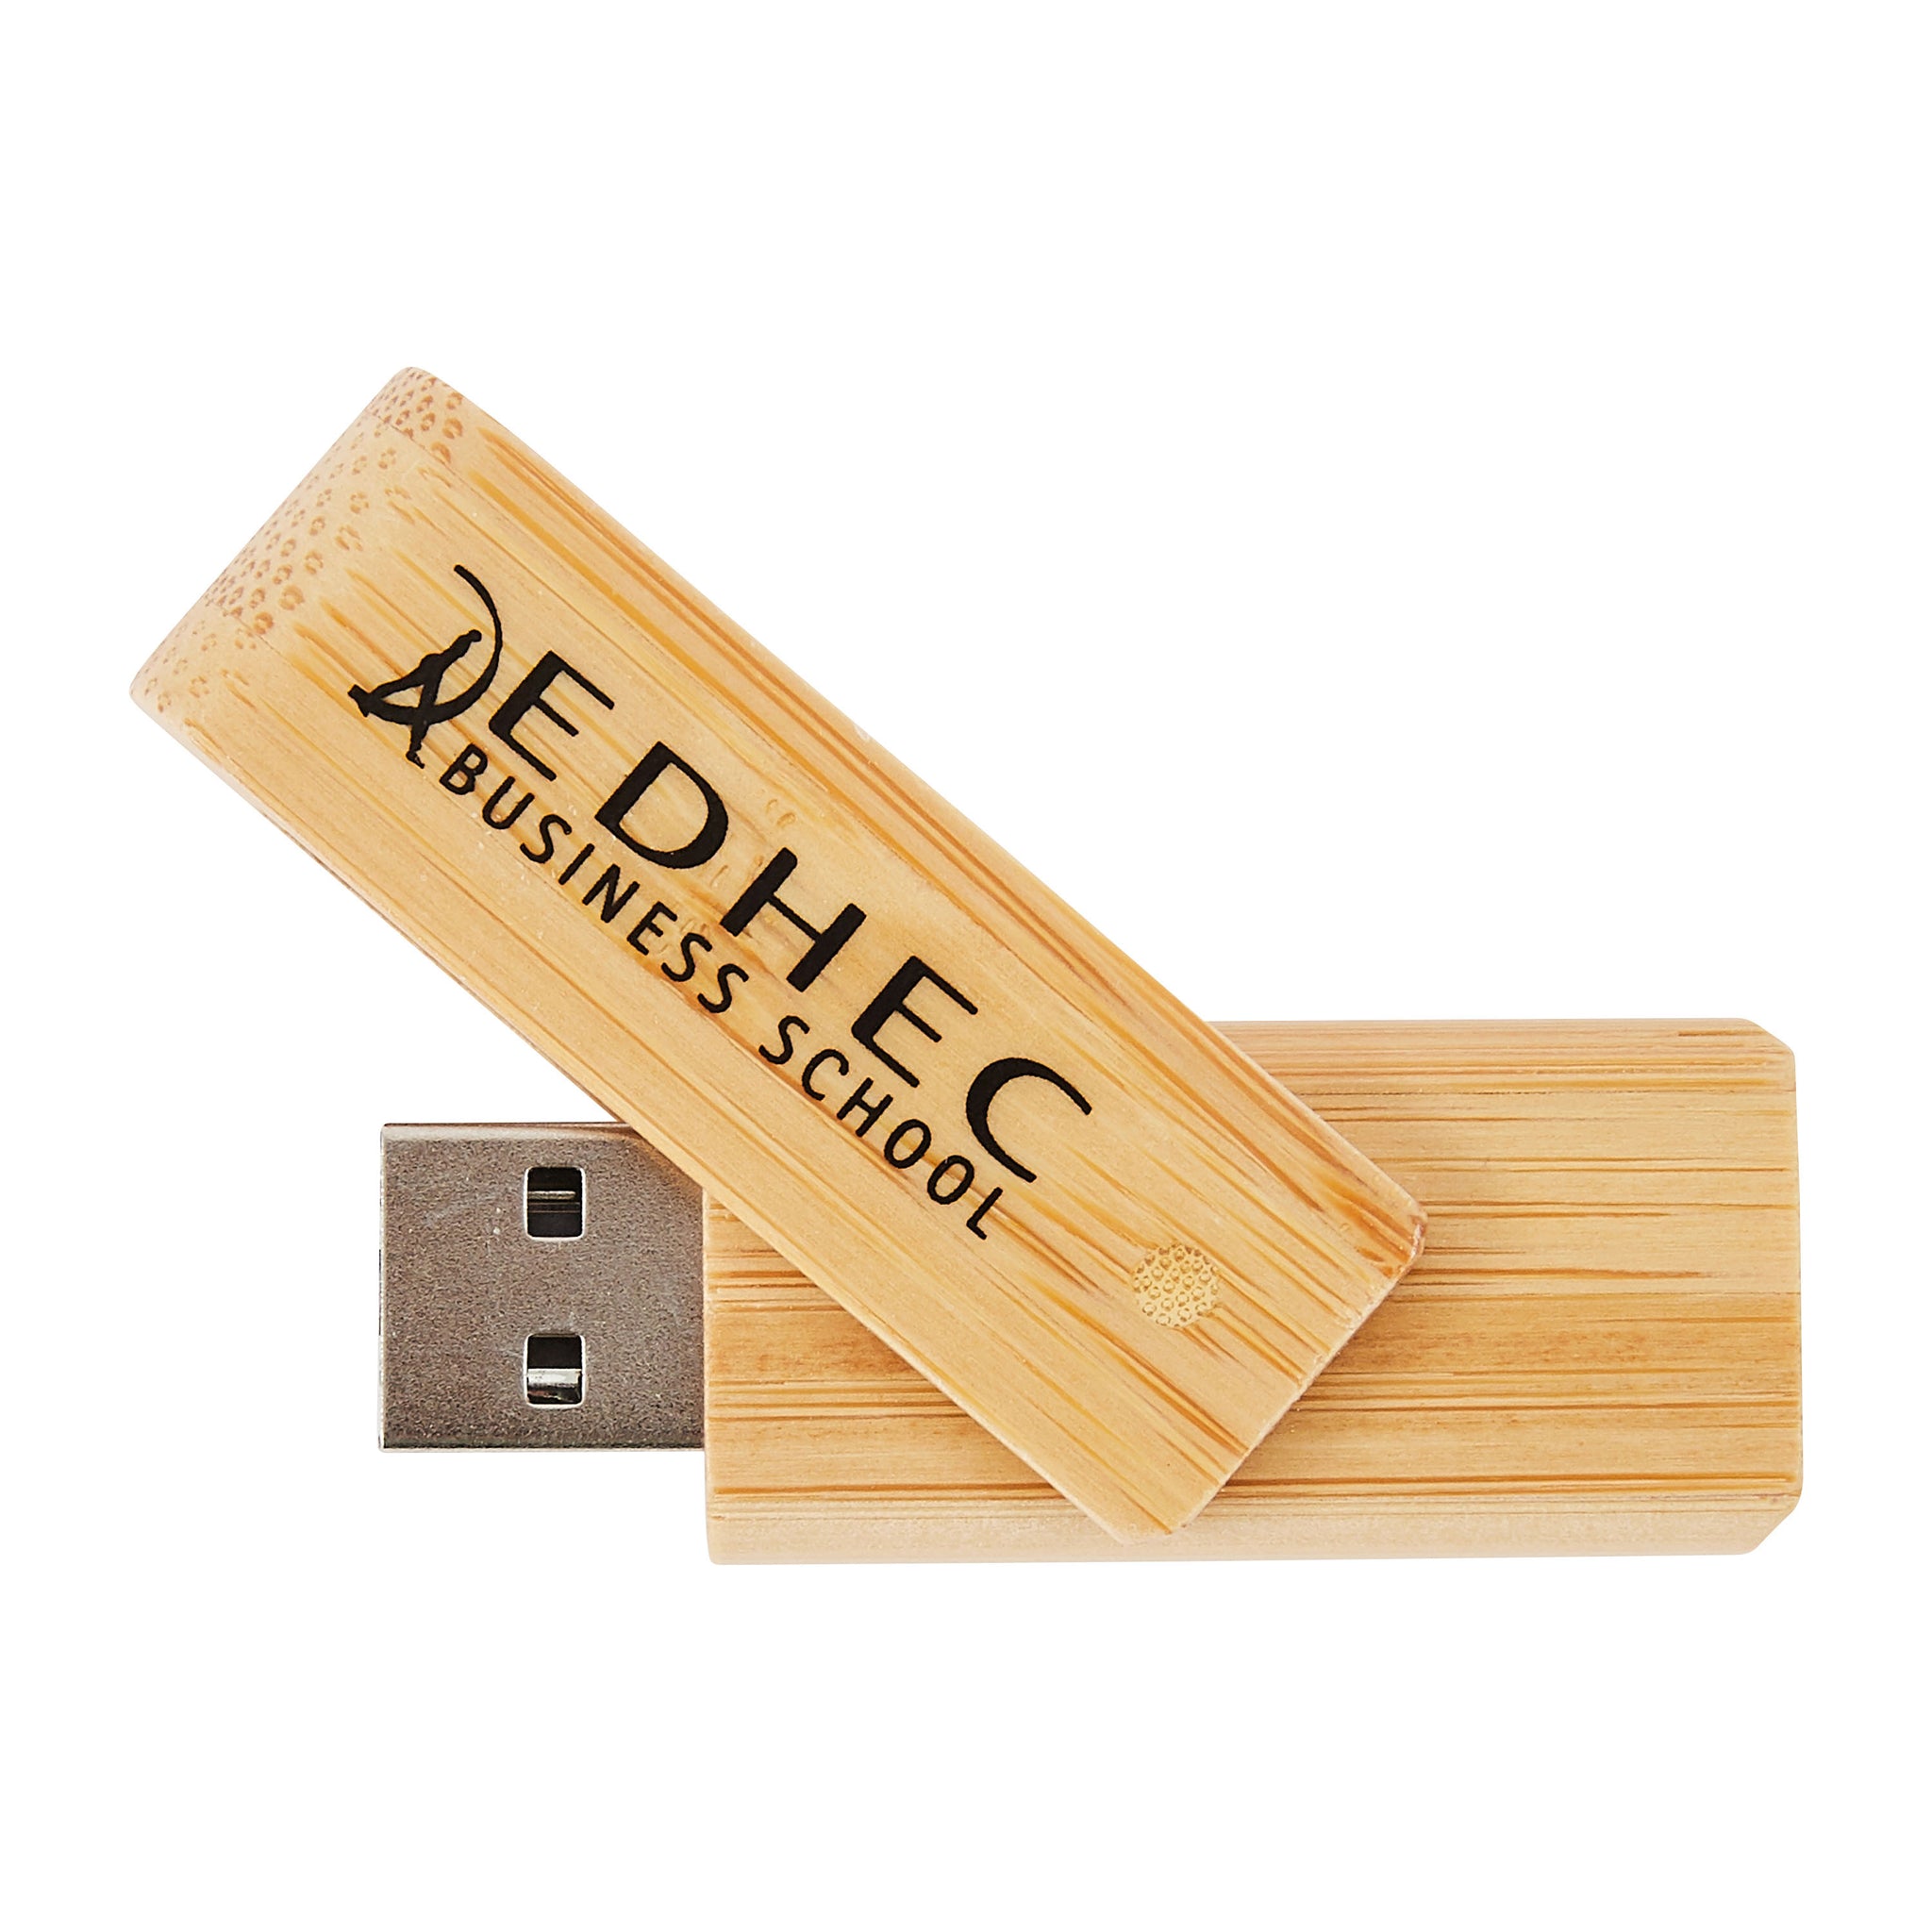 Clé USB rotative en bambou